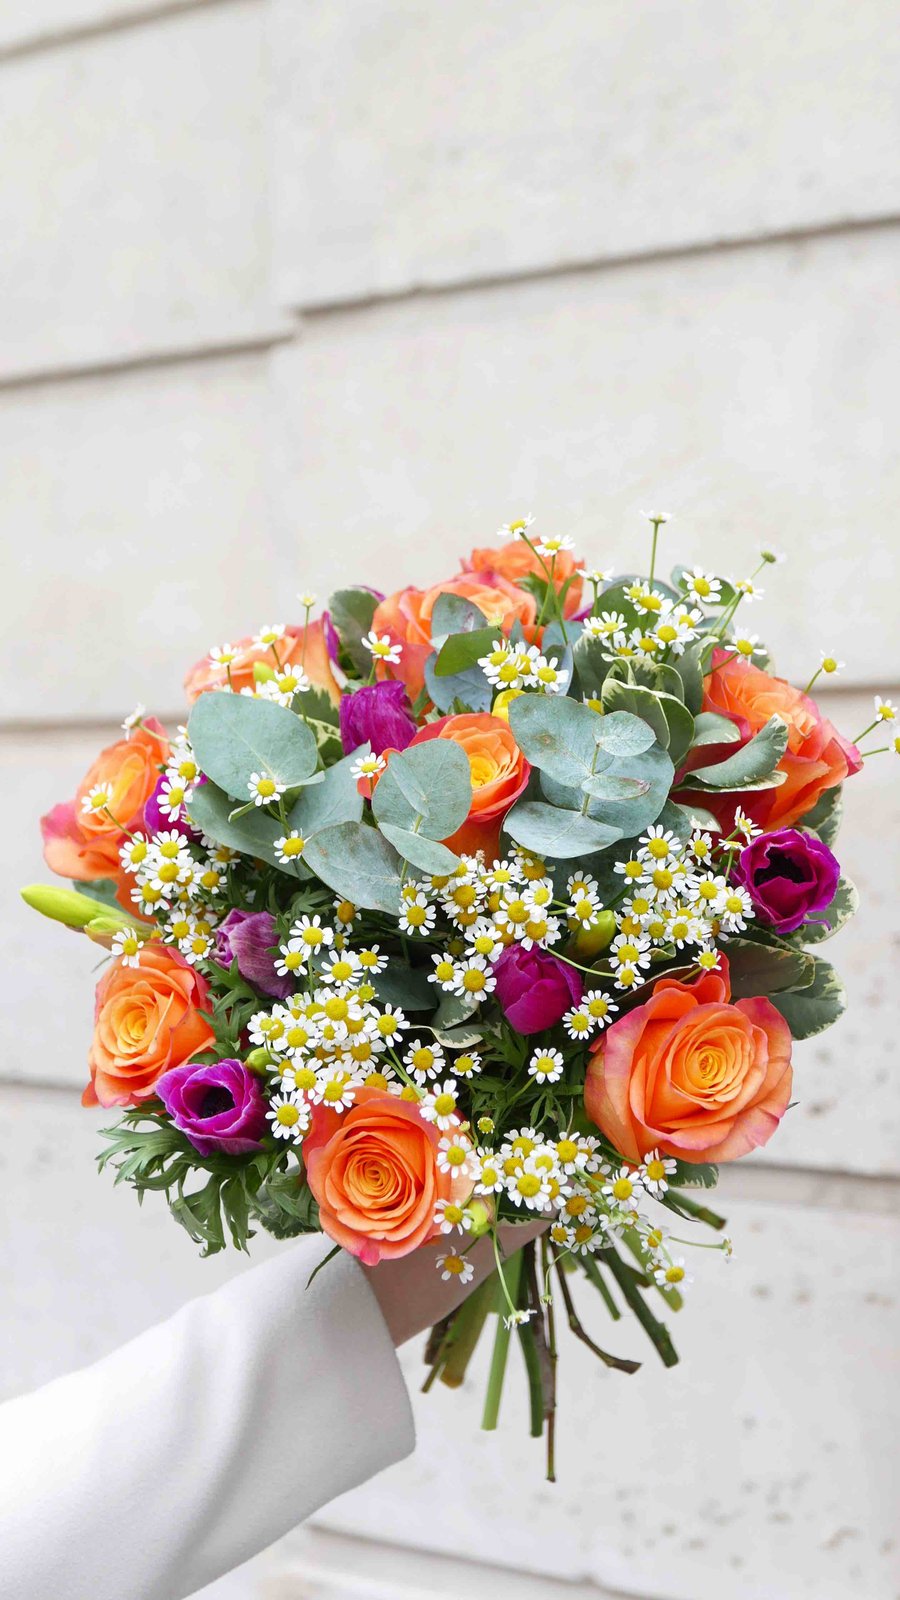 Le 7 mars, offrez des fleurs pour la fête des grands-mères !